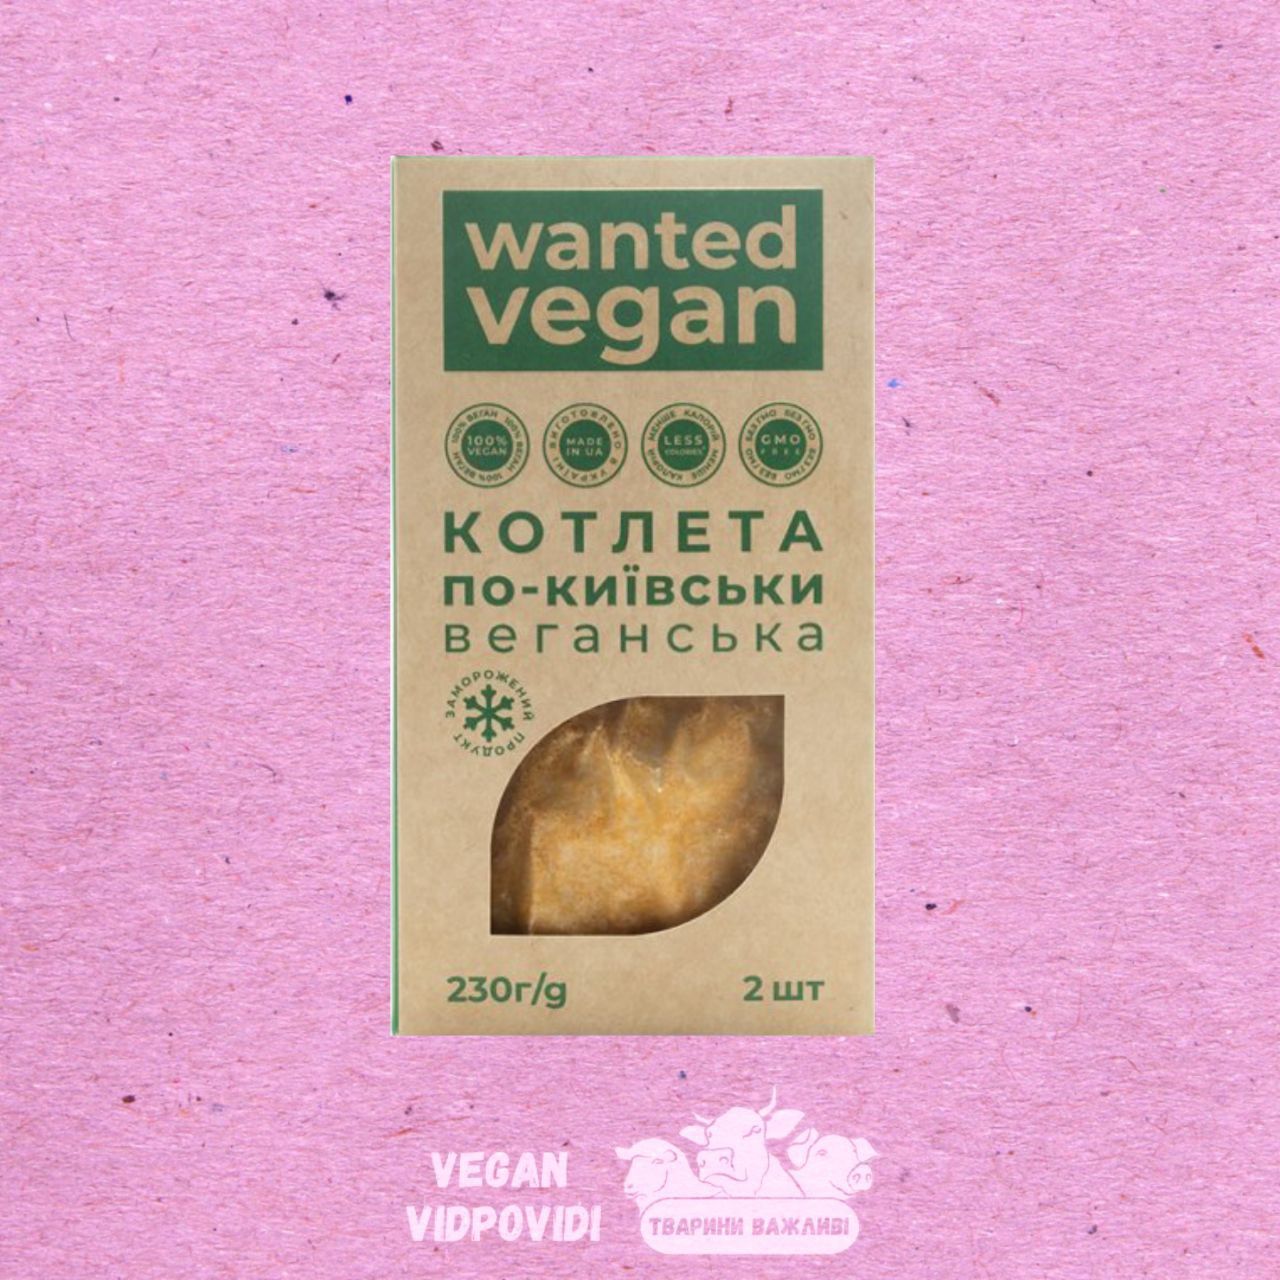 Котлета по-київськи веганська Wanted vegan